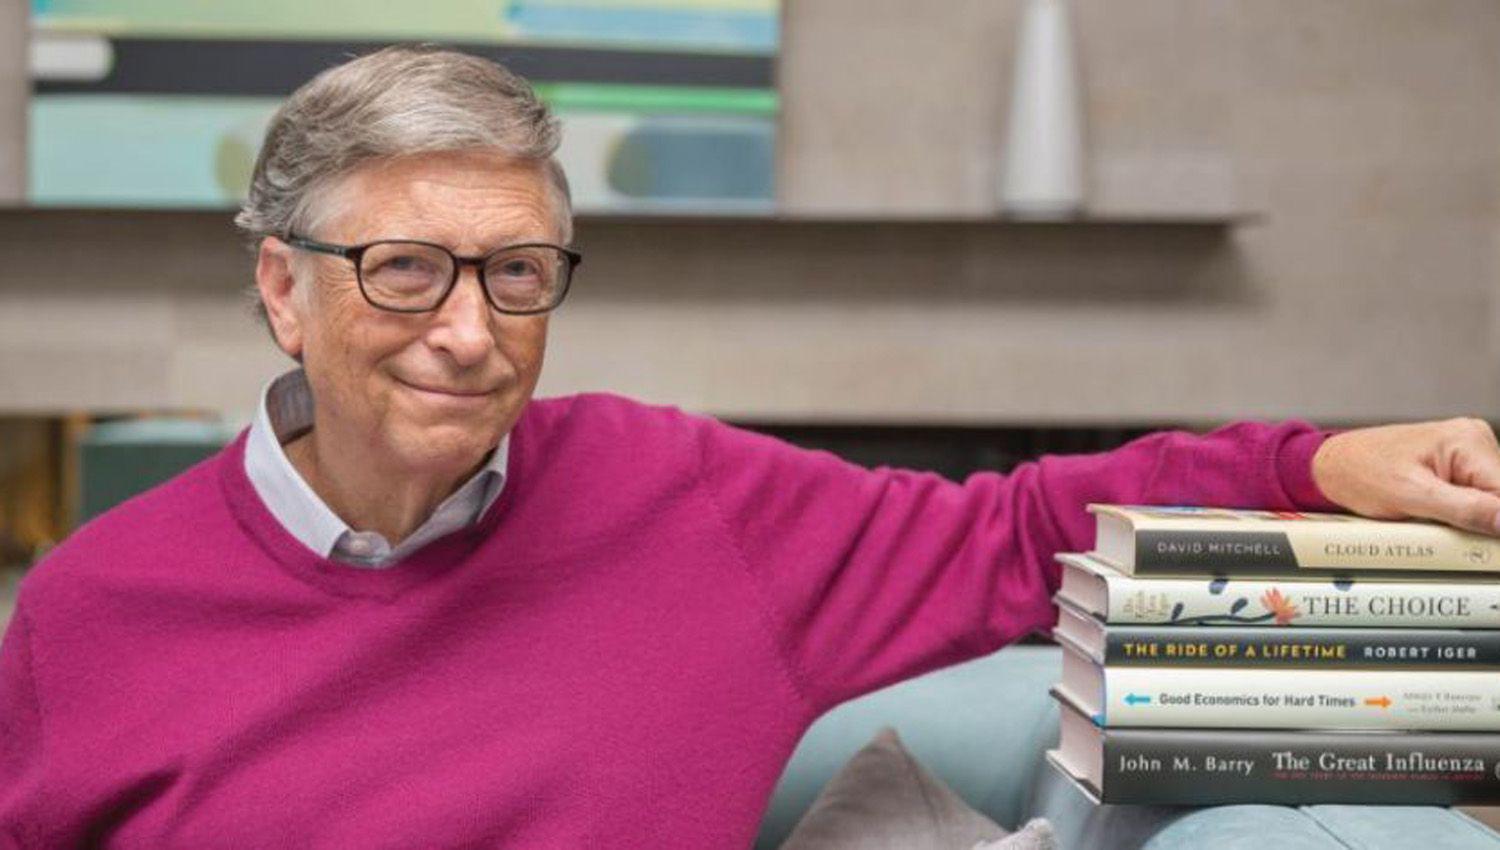 Los 5 libros preferidos de Bill Gates para tener eacutexito en la vida y los negocios este antildeo- cuaacuteles son